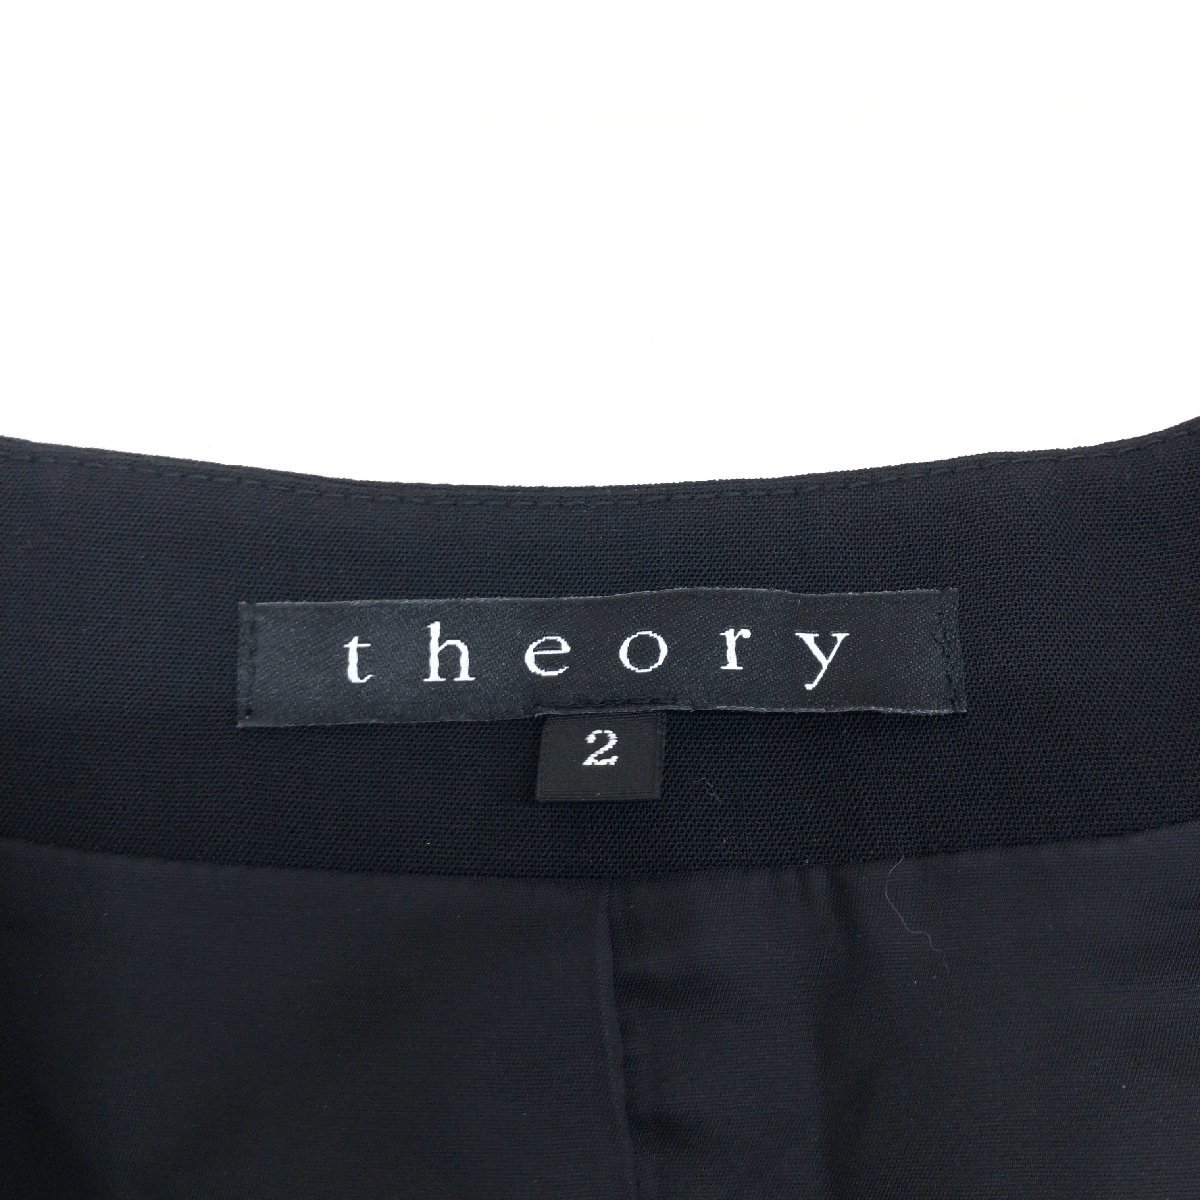 ●美品 Theory セオリー ノーカラー ウール オープン ジャケット 2(M) 黒 ブラック 羽織り 国内正規品 レディース 女性用_画像3